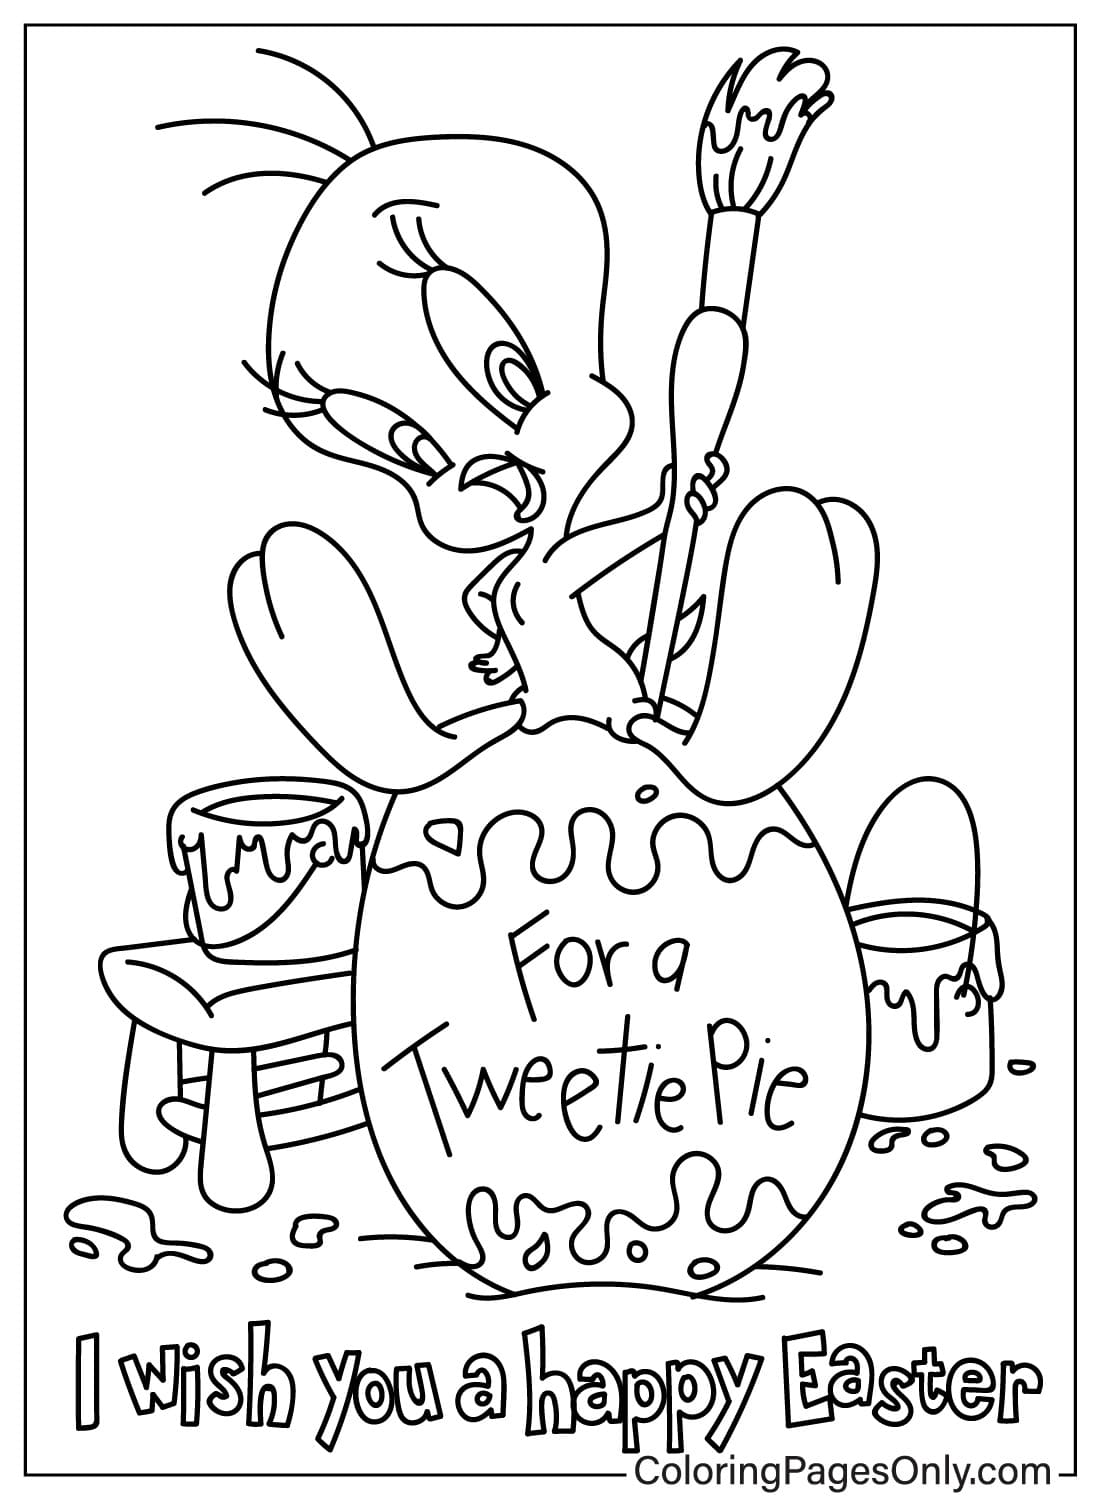 Пасхальная раскраска Твити из пасхального мультфильма